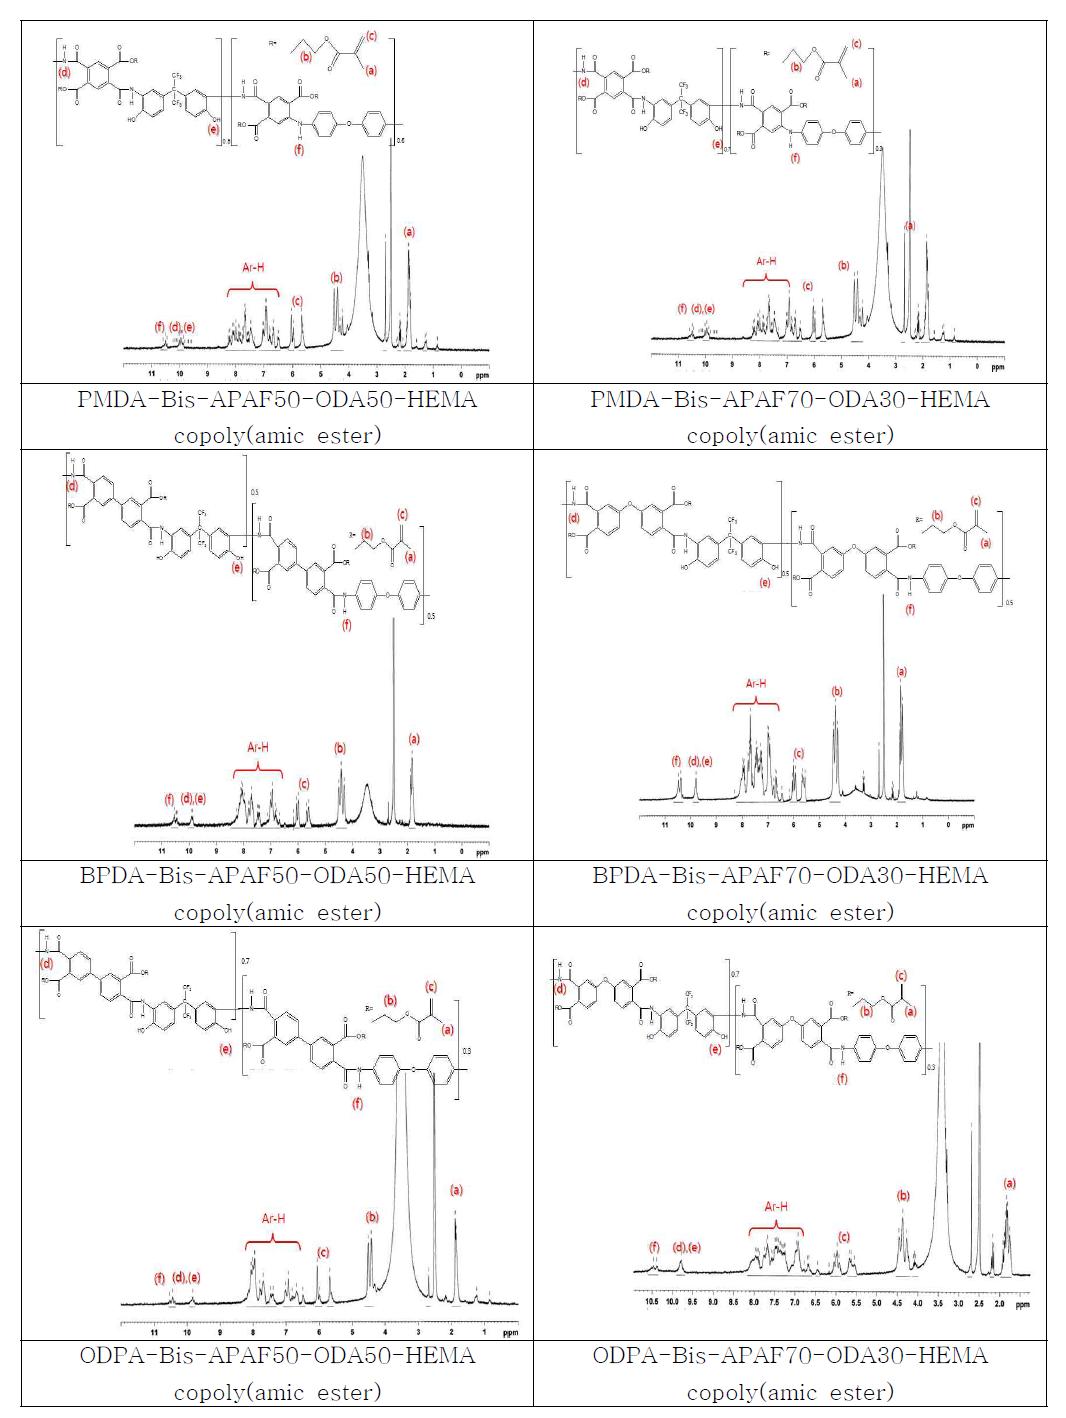 합성된 copoly(amic esters)의 1H NMR spectra